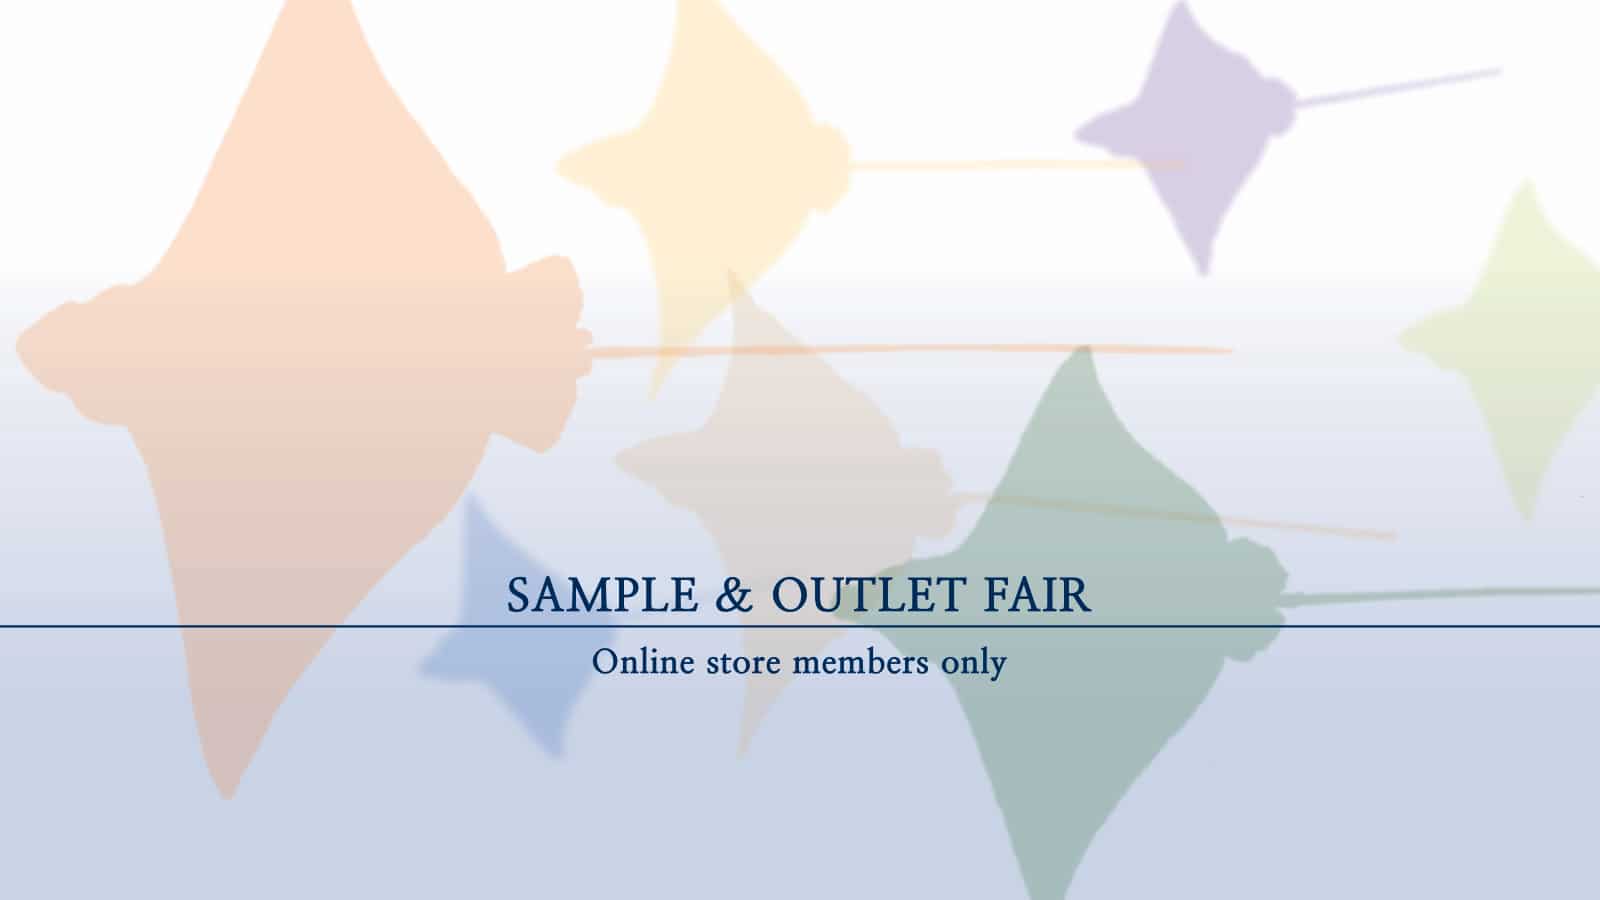 メインヴィジュアル -sample & outlet fair-